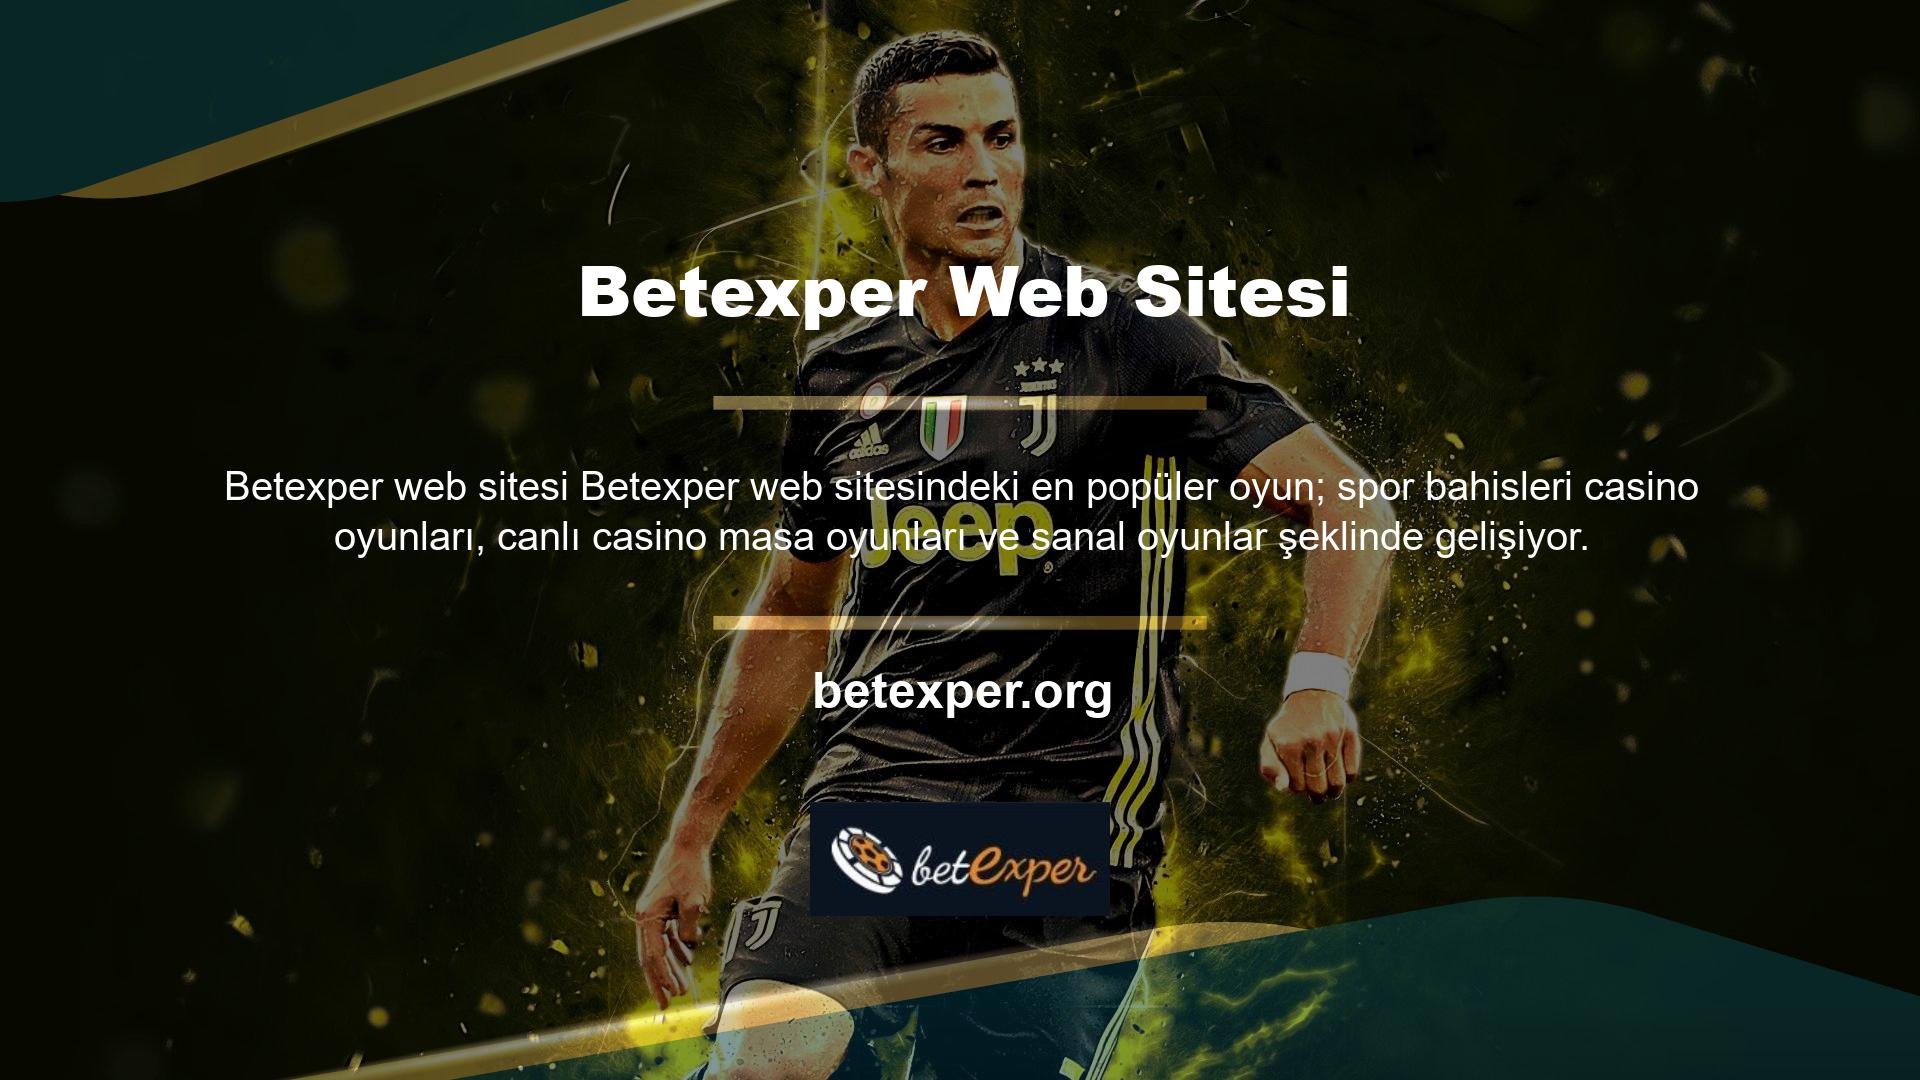 Betexper sanal oyunları diğer kategorilere göre daha sık oynanır ve akıllıca oynarsanız size harika bonuslar sunabilir